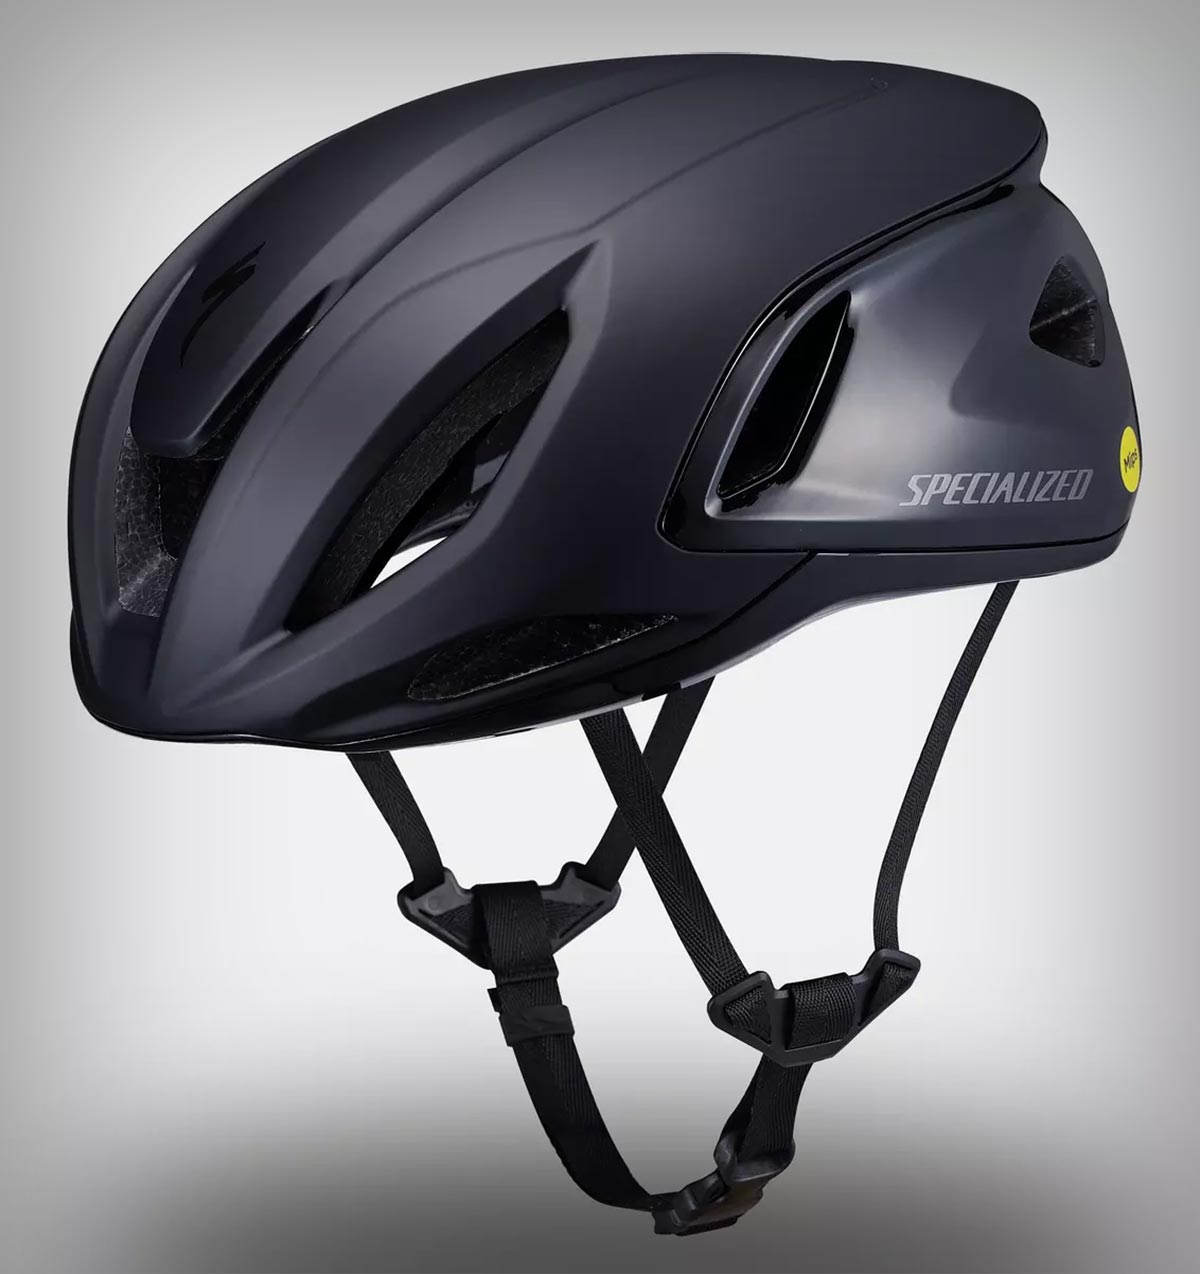 Specialized Propero 4, un casco que combina las ventajas aerodinámicas del S-Works Evade 3 con la ventilación del S-Works Prevail 3